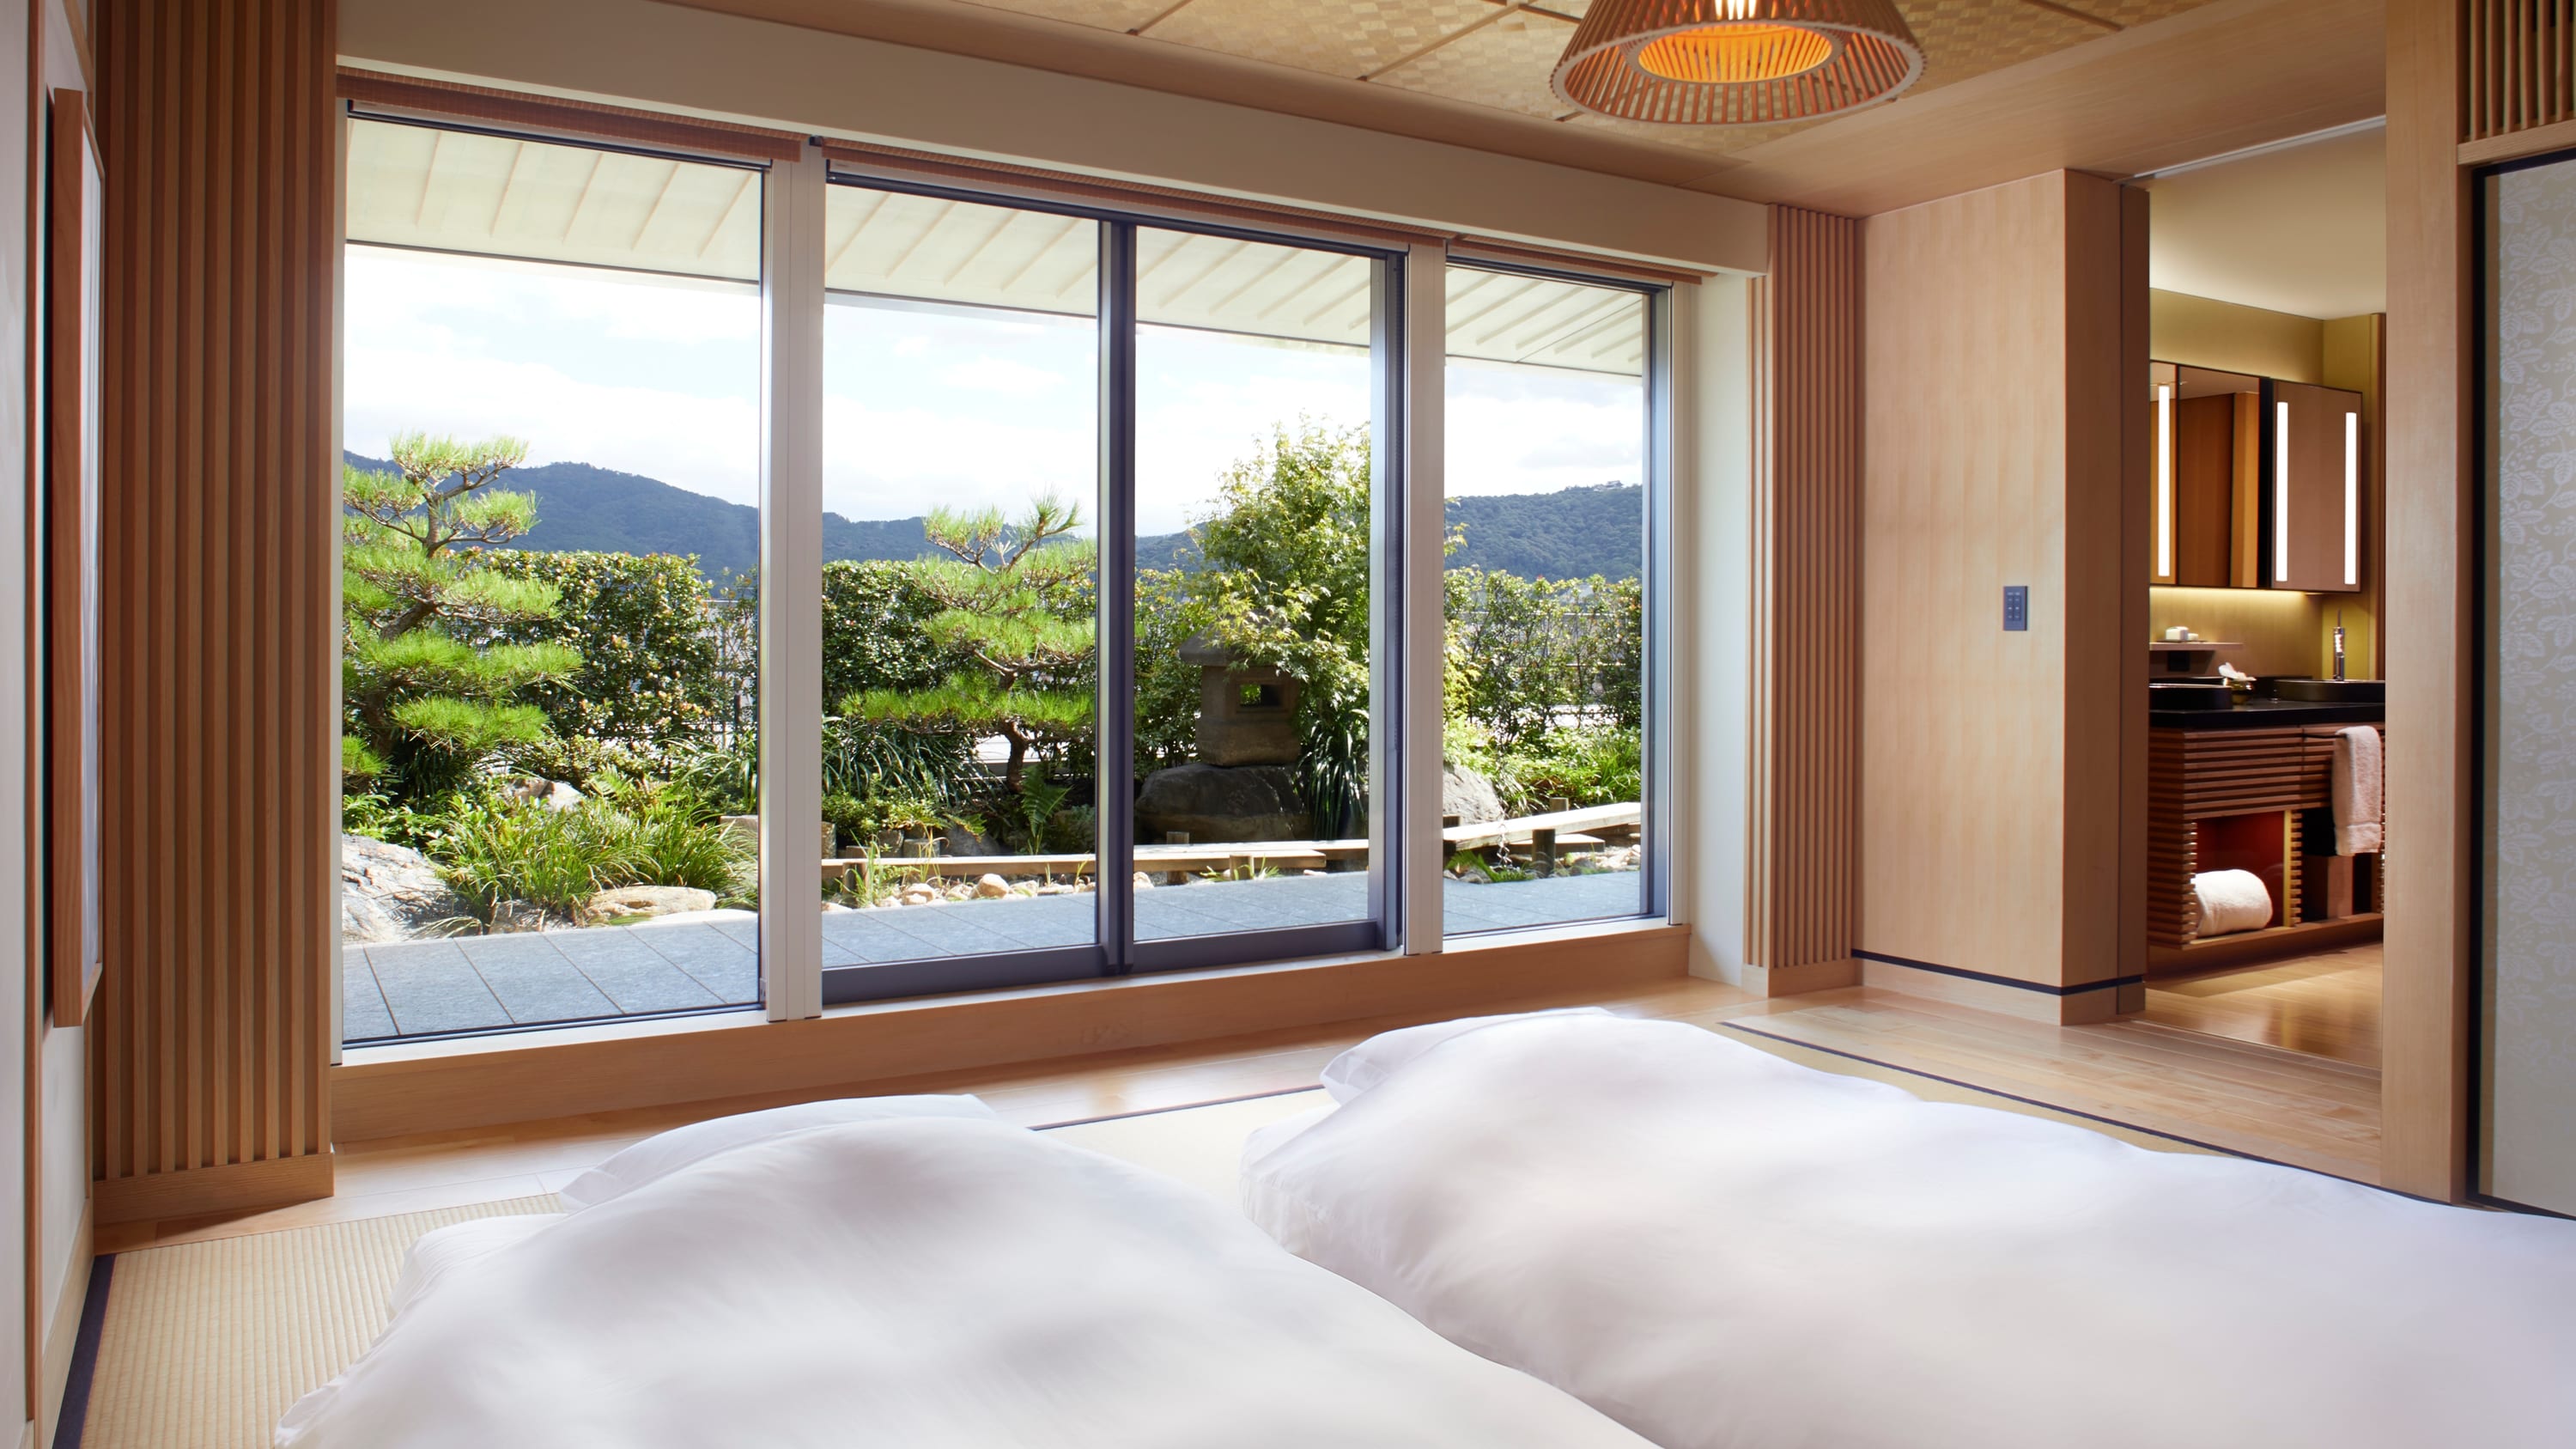 Guest Room / Garden Terrace Suite TATAMI Bedroom